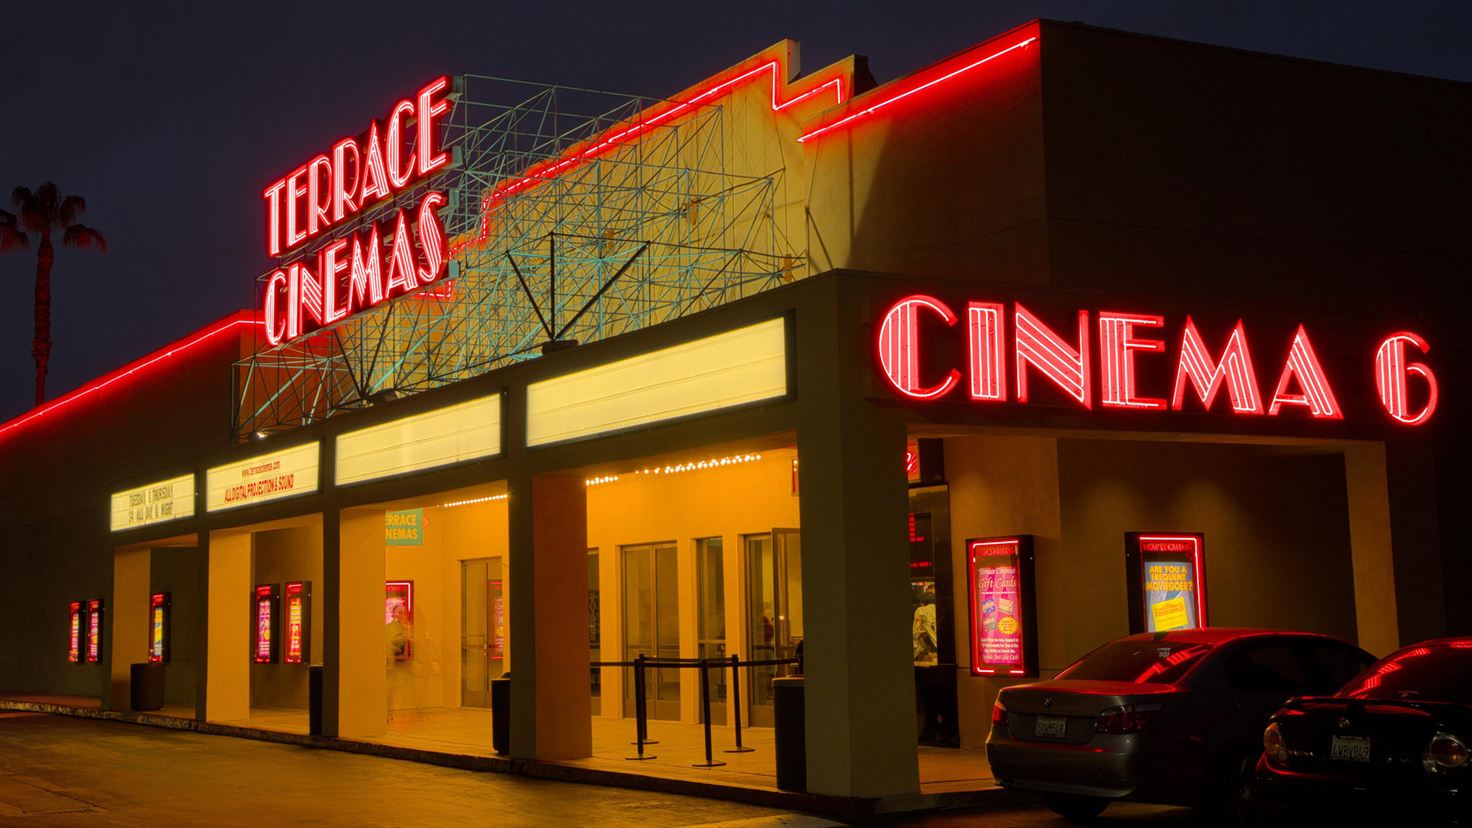 Terrace Cinemas